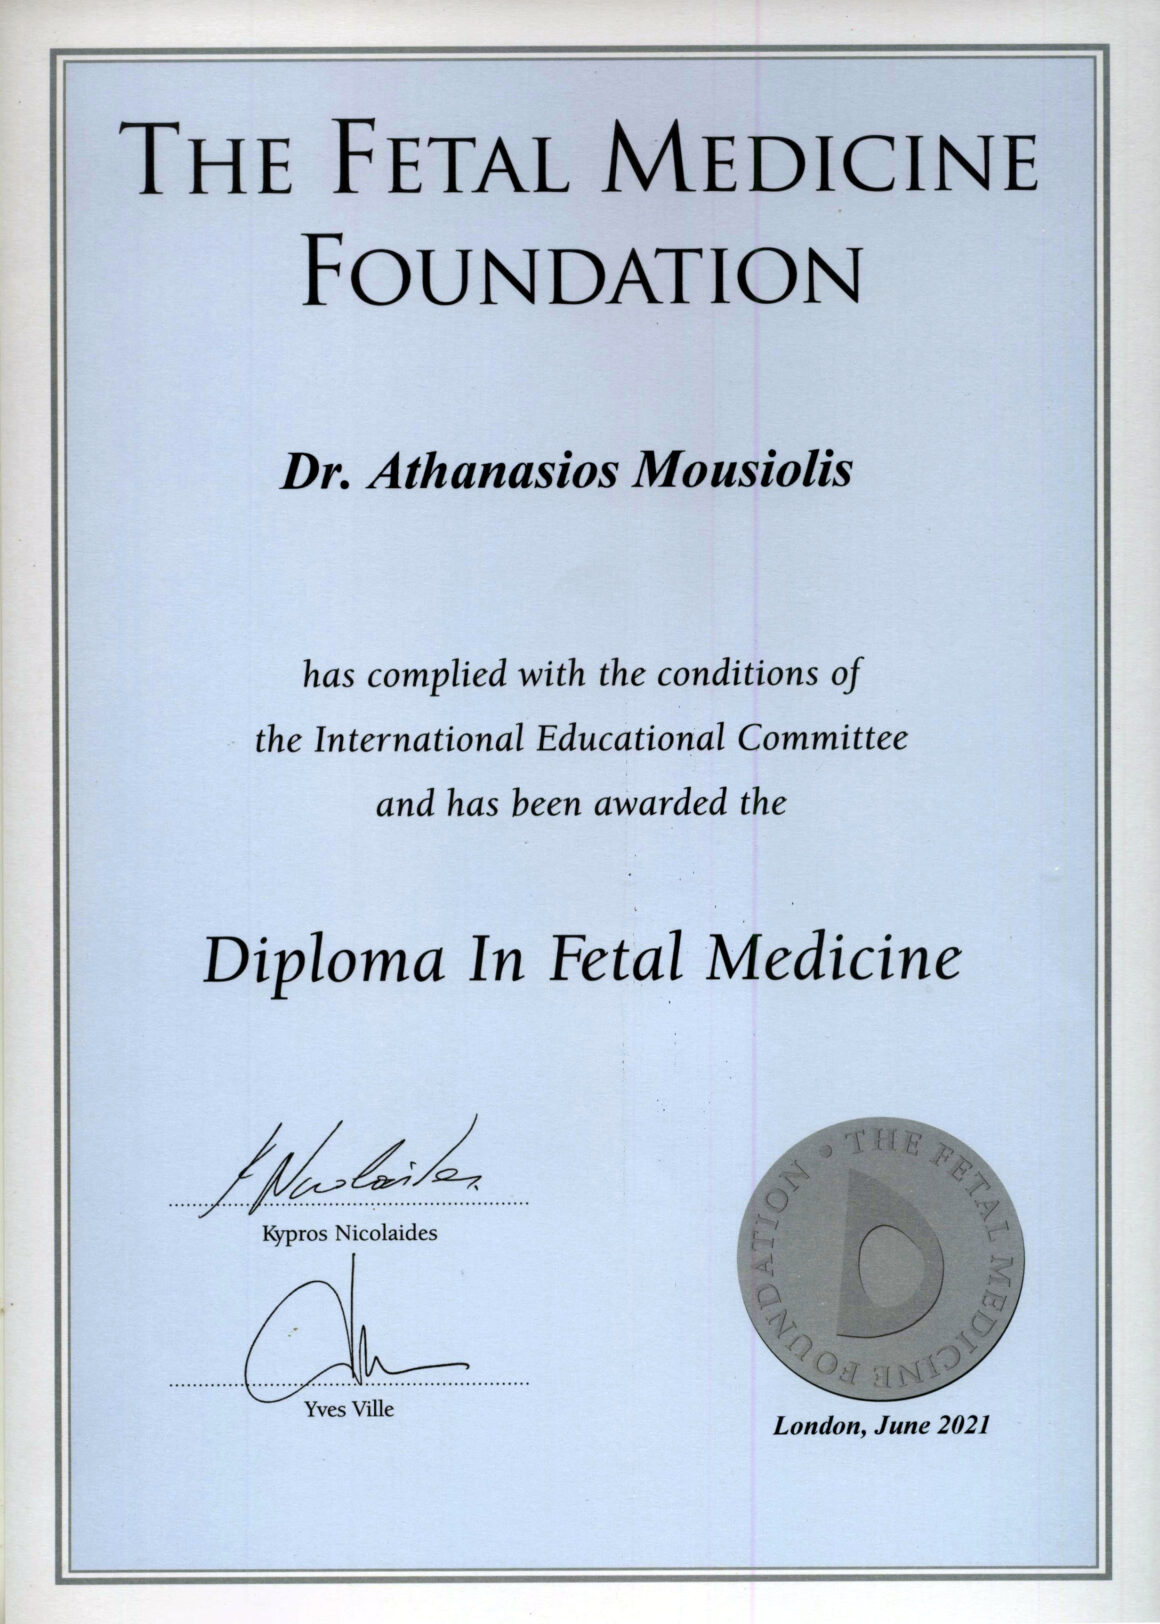 Diploma in Fetal Medicine